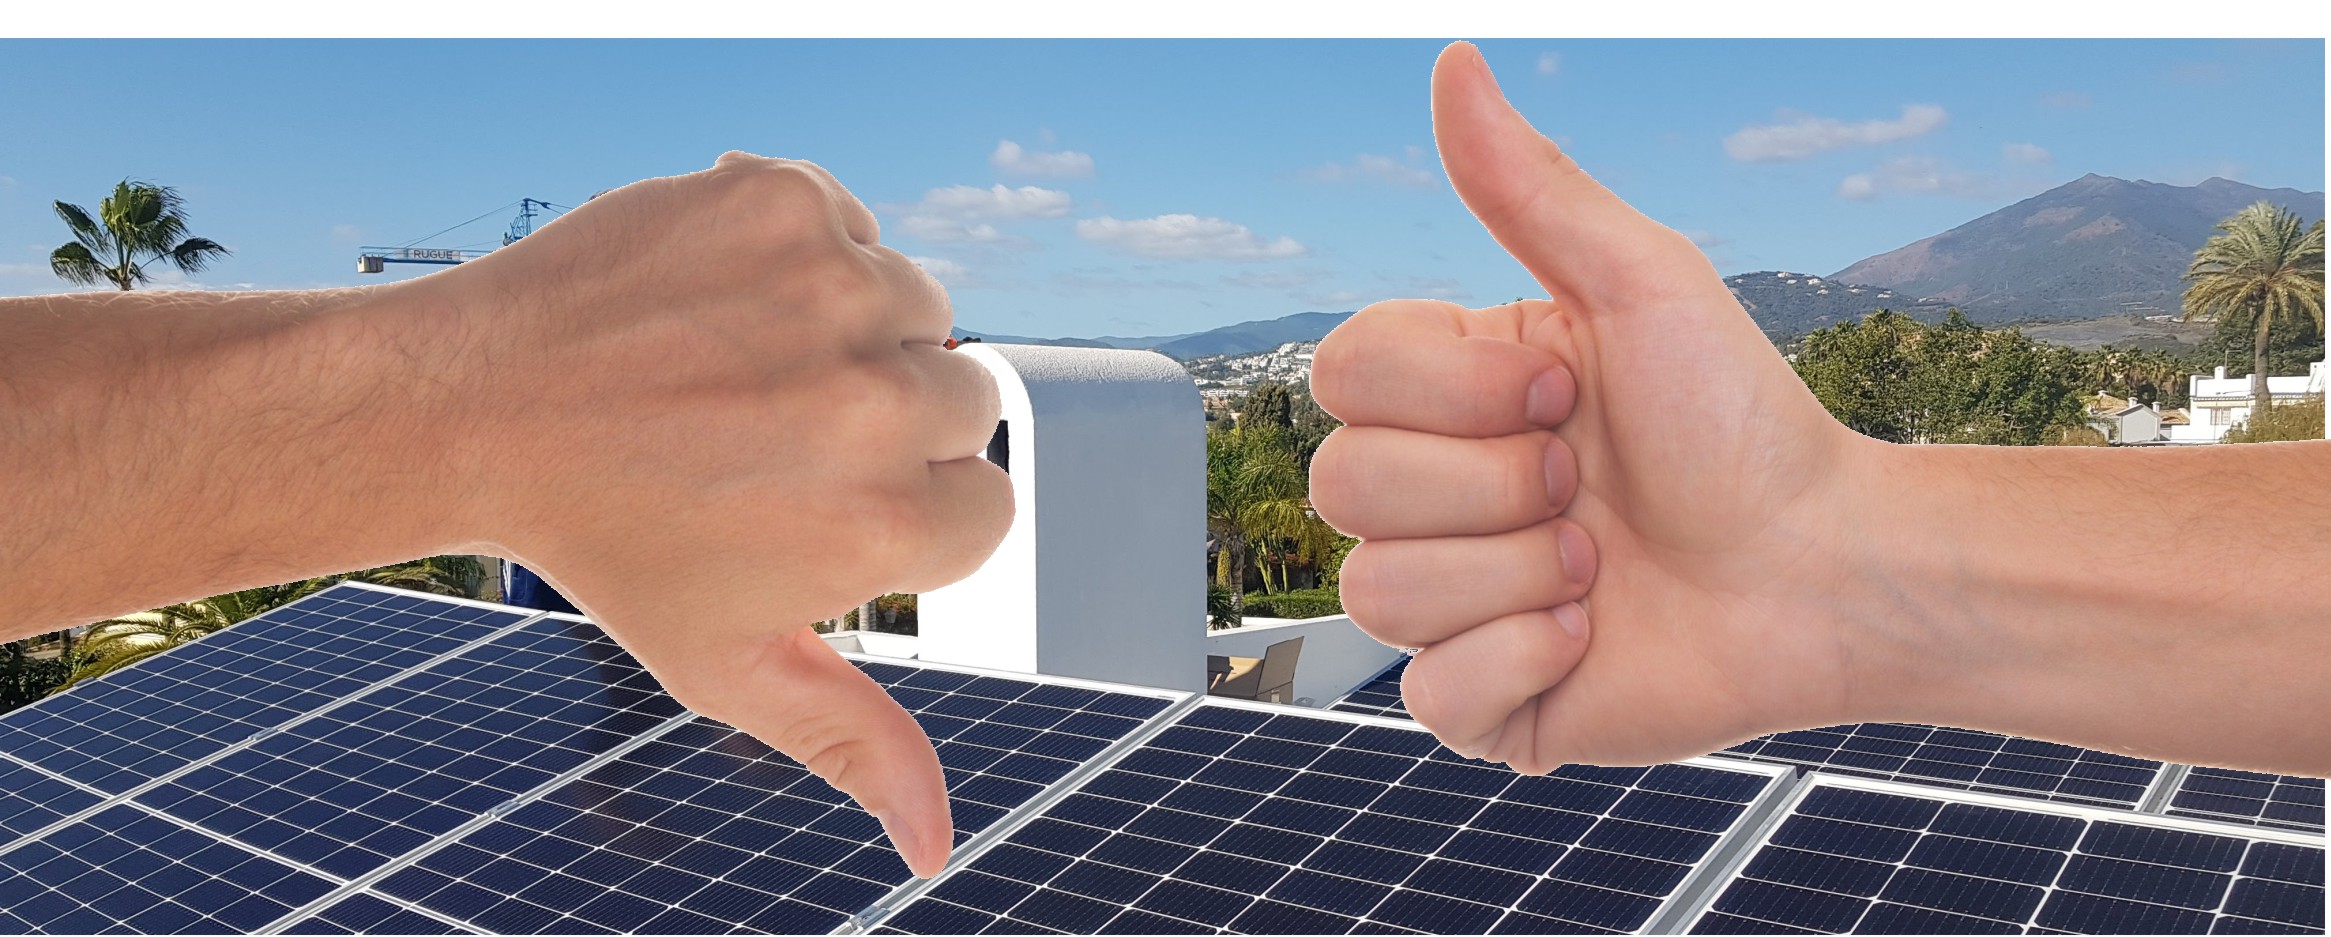 Energía solar fotovoltaica y térmica: ventajas y desventajas